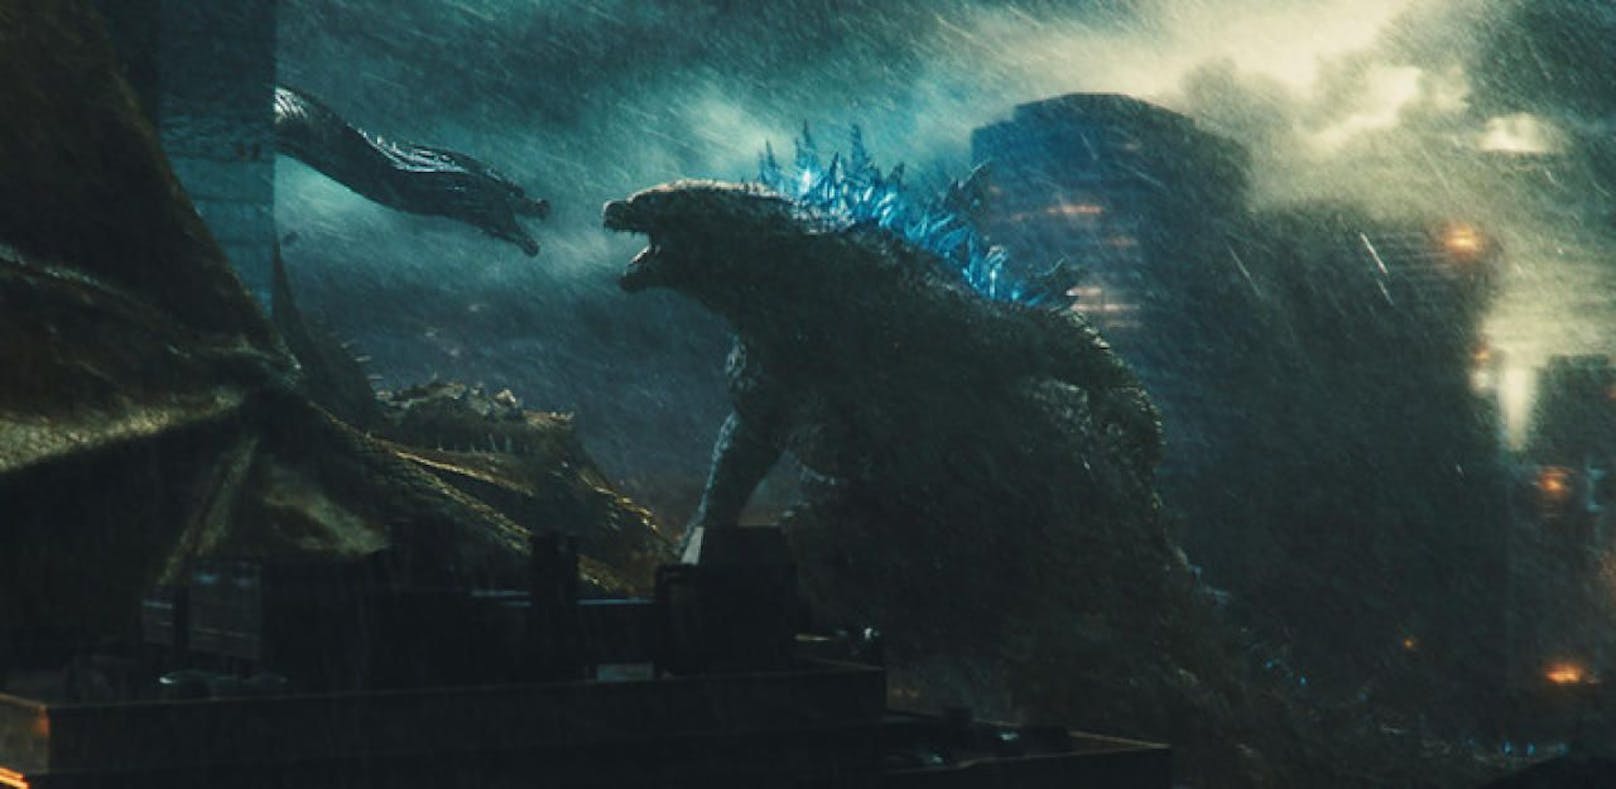 Das Hollywood Megaplex legt nochmal ein Schäuferl drauf: Godzilla läuft ab Mittwoch in der 4D-Extrem Version über die Kino-Leinwand.